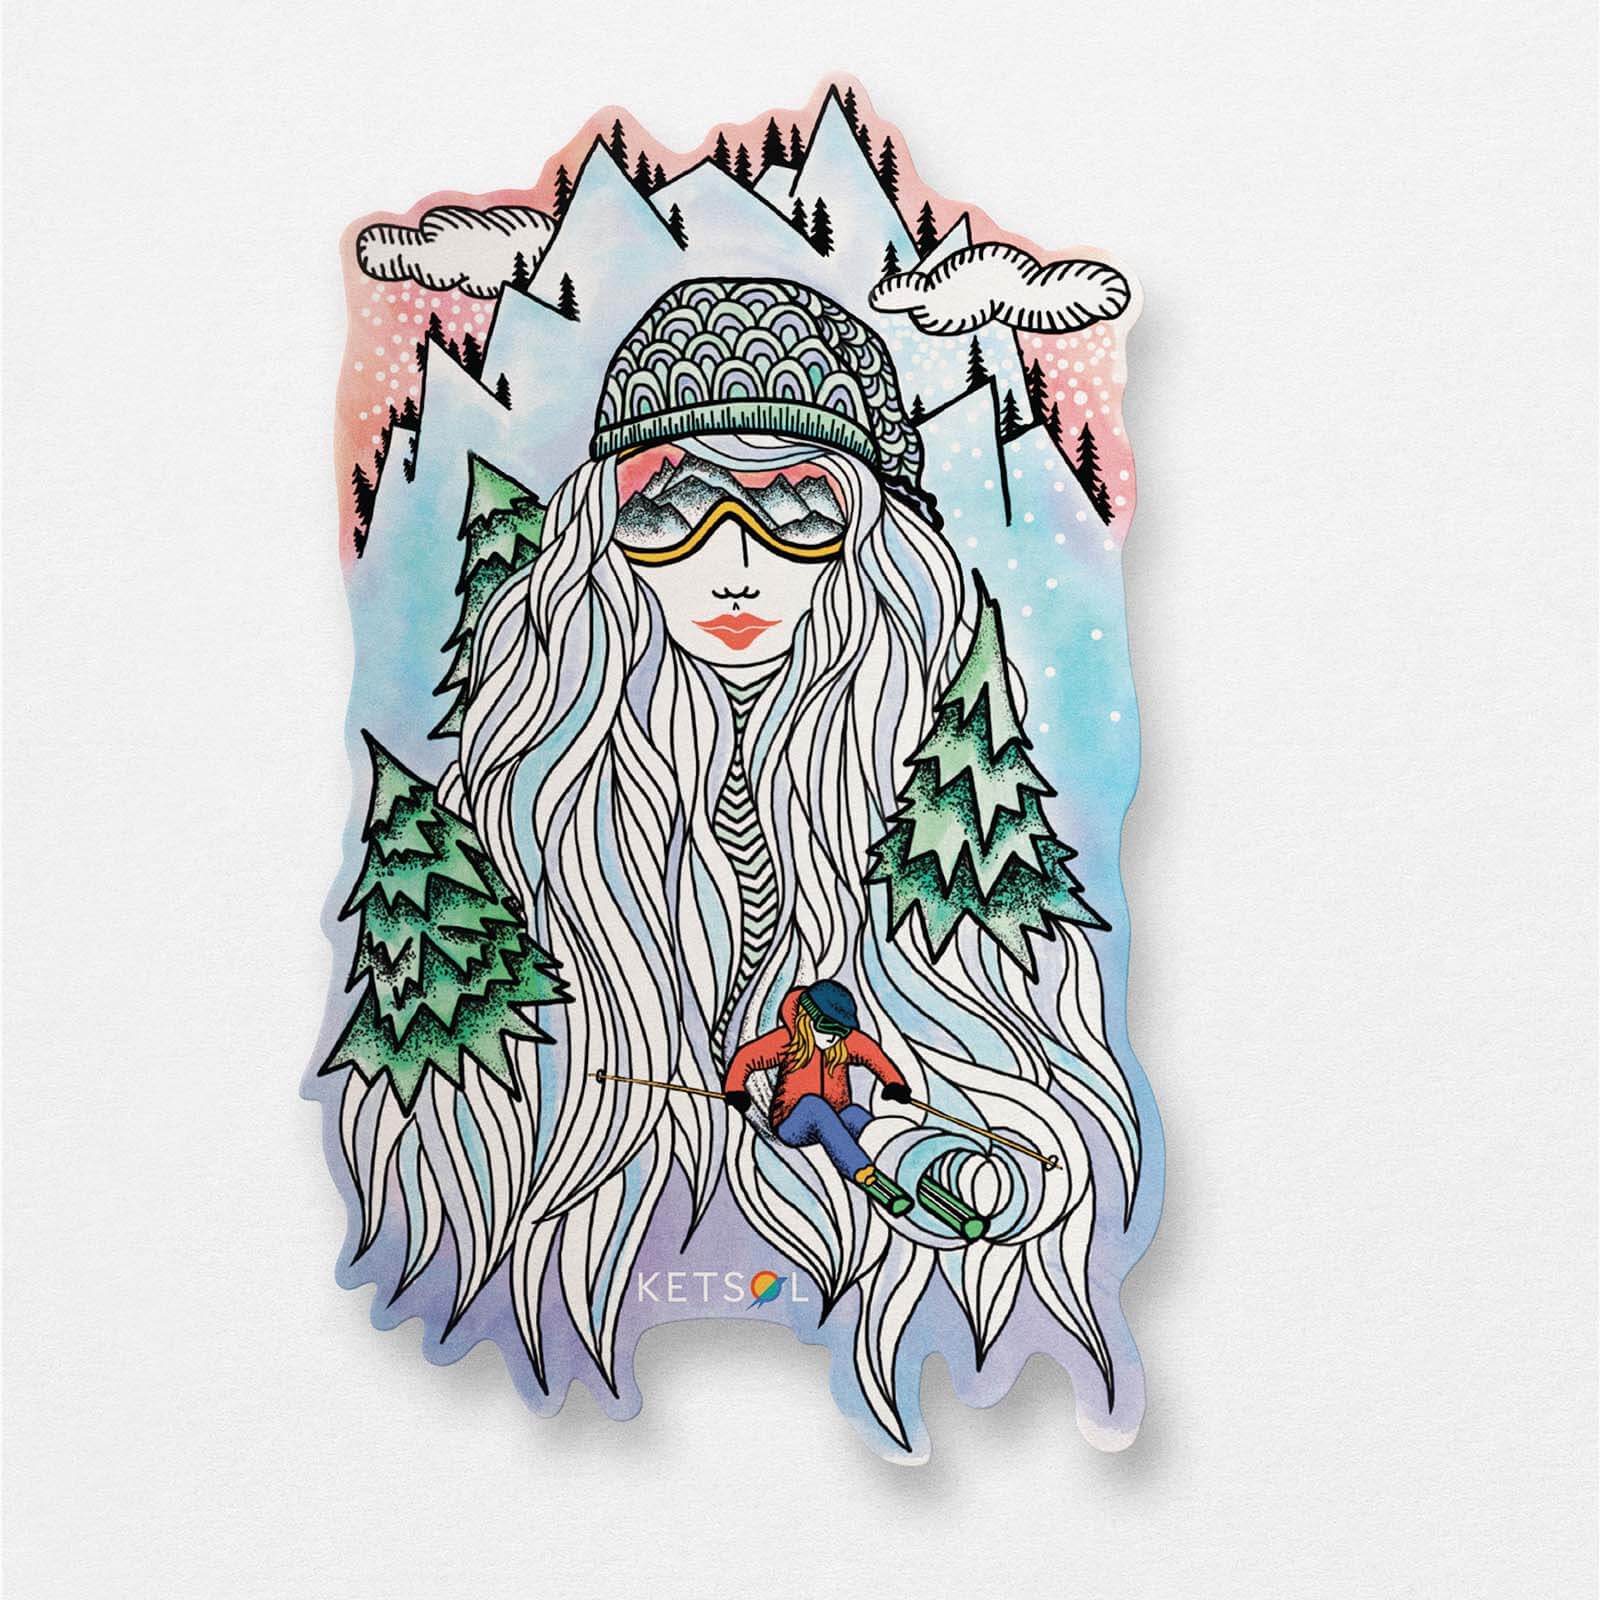 Ski Girl Sticker - Ketsol